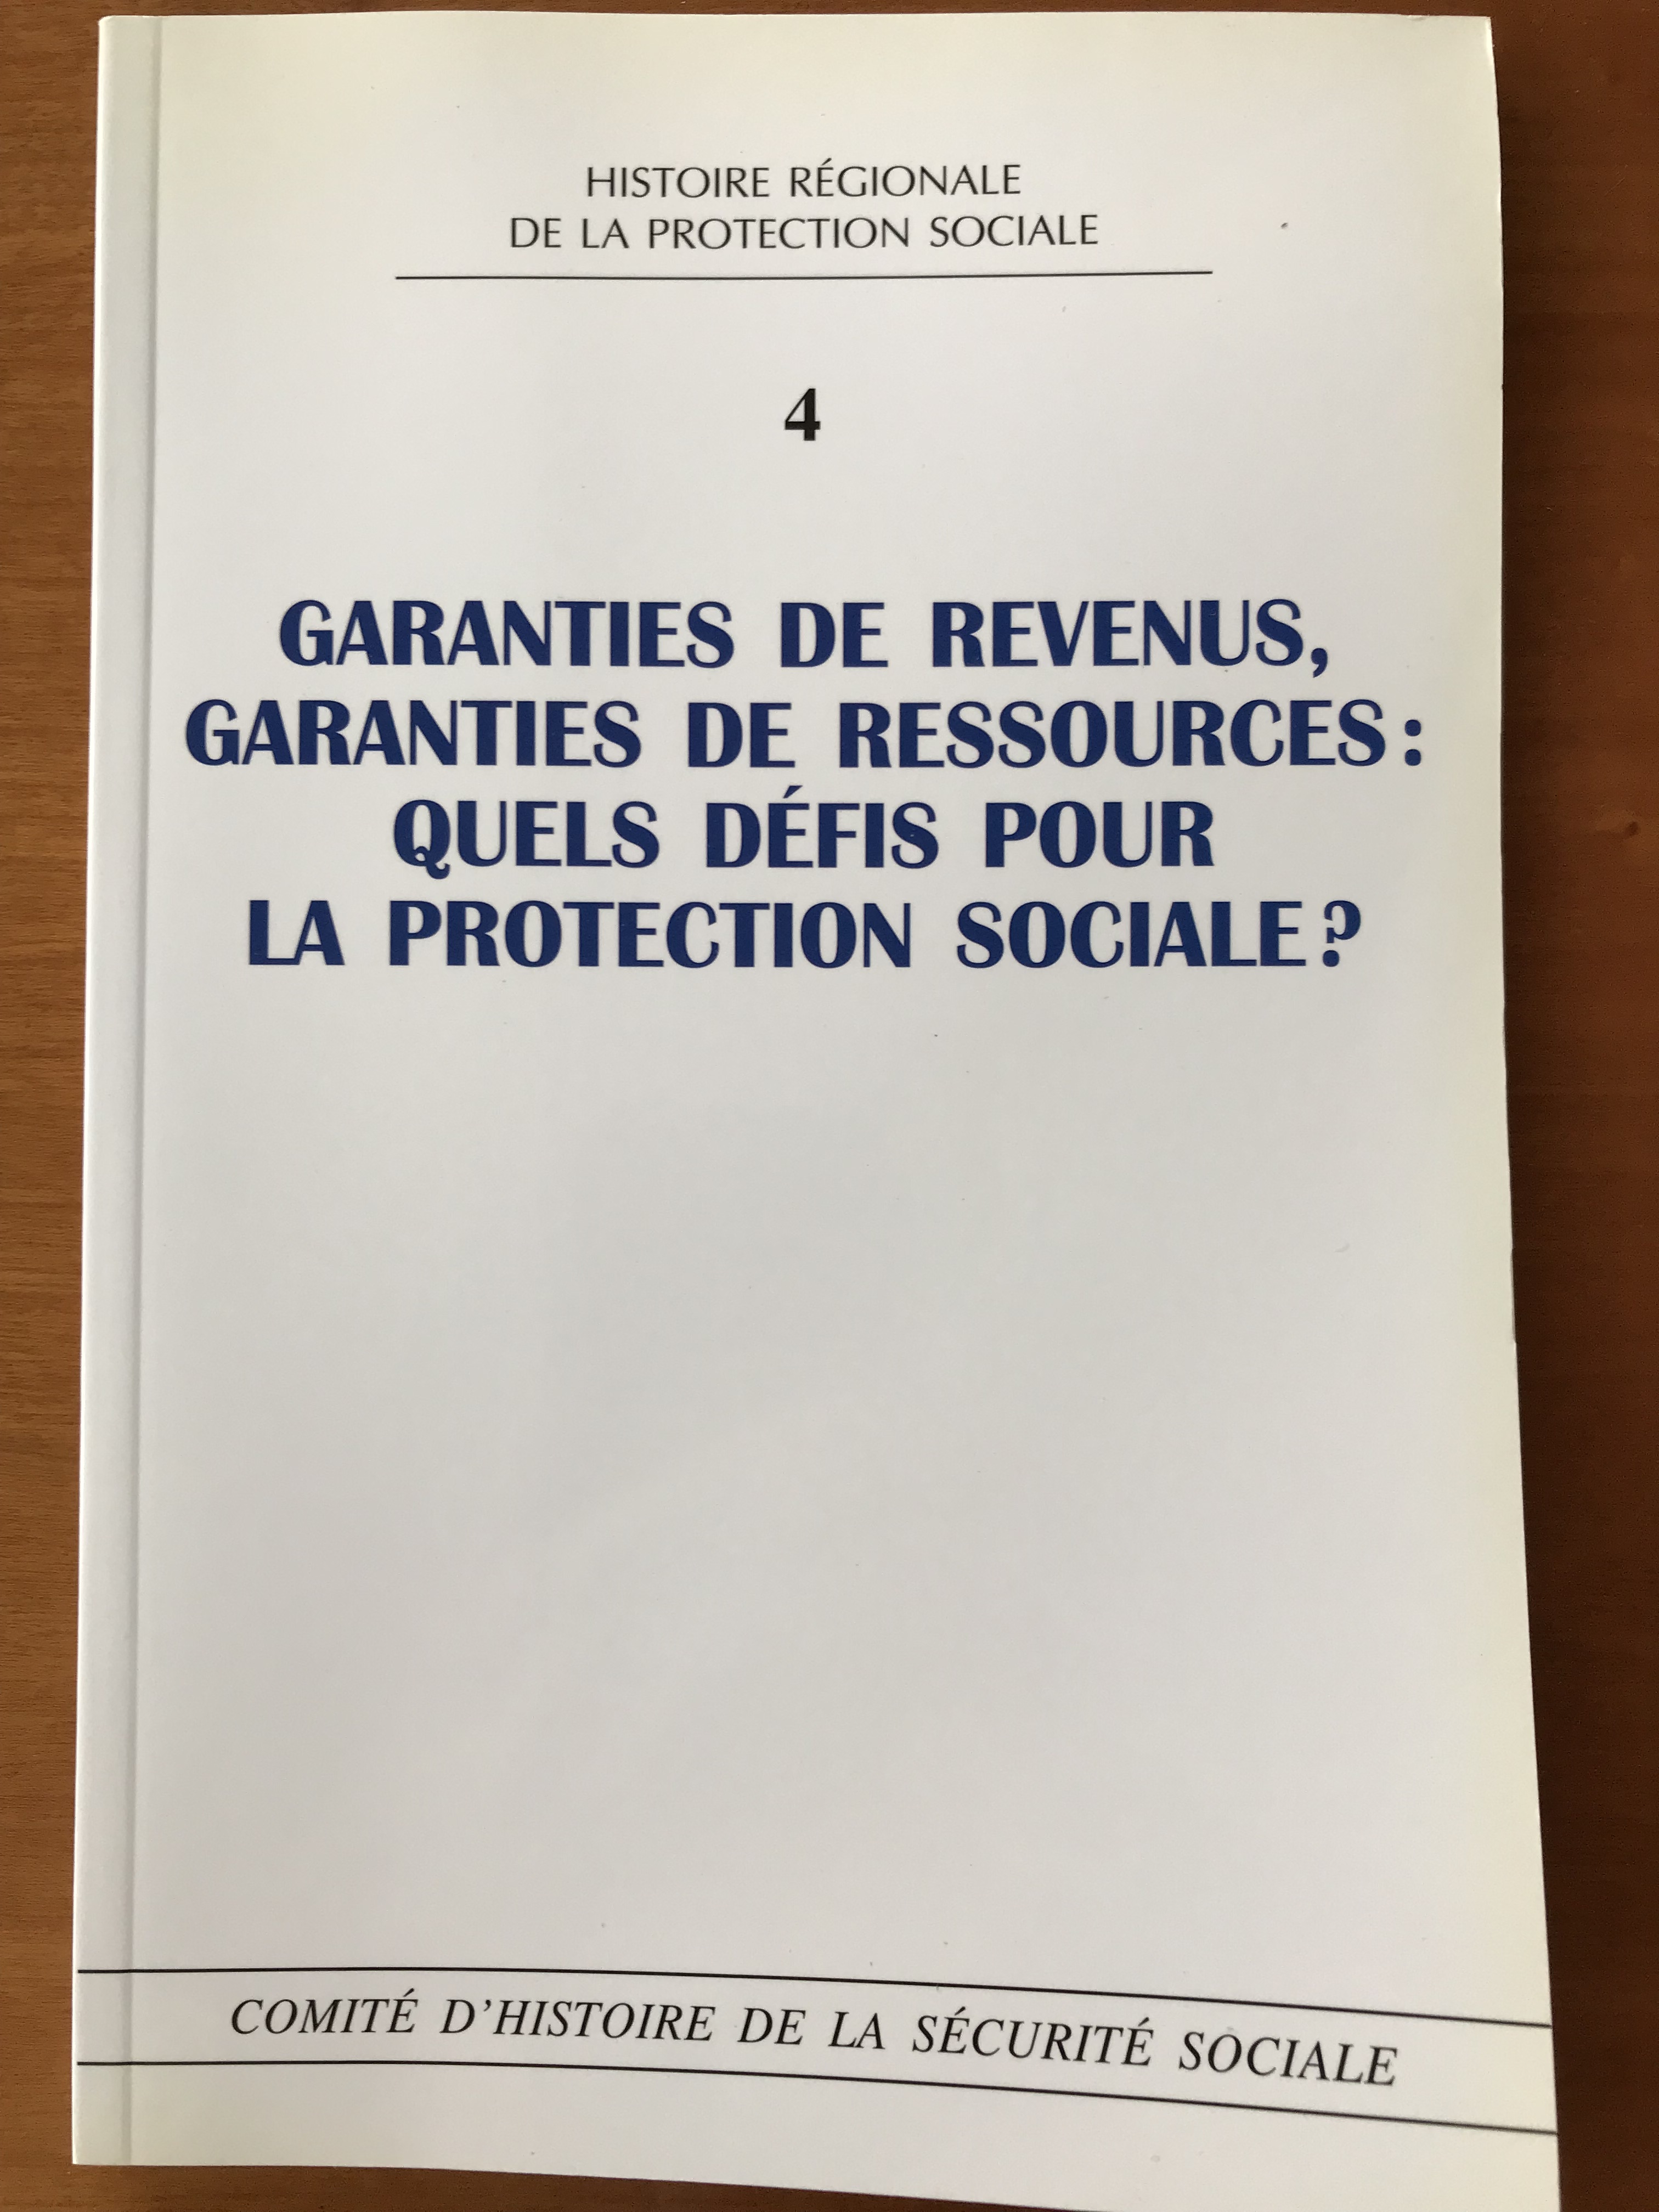 Garanties de revenus, garanties de ressources : quels défis pour la protection sociale ?